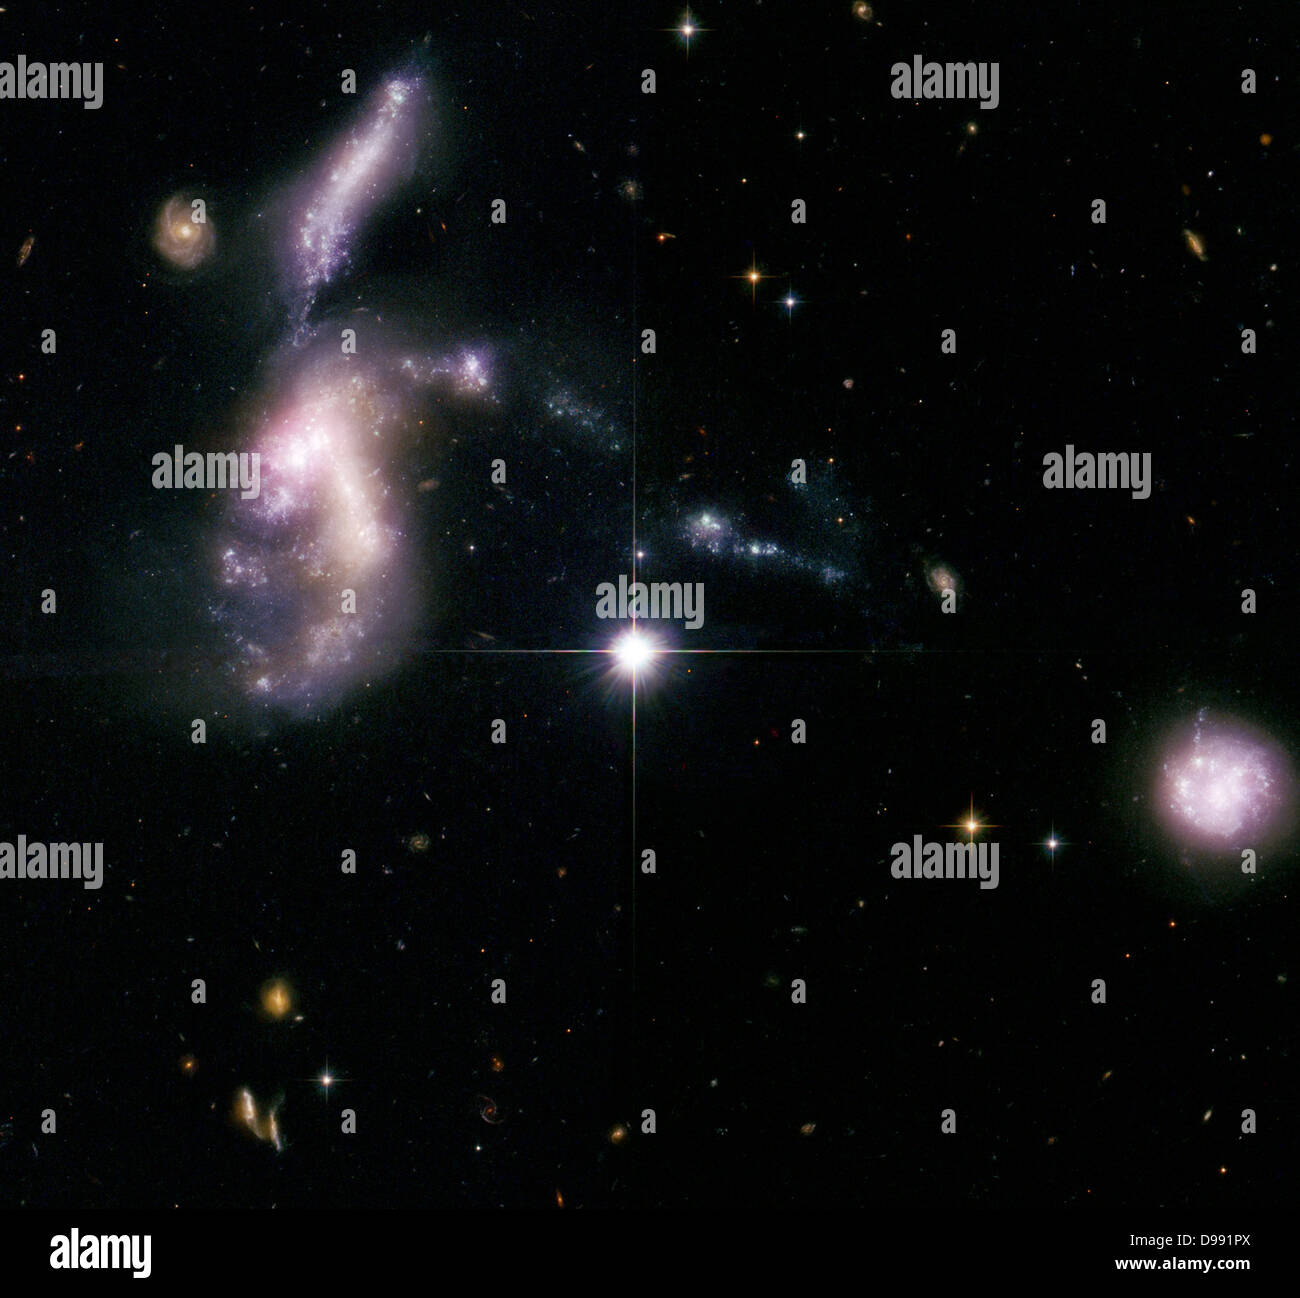 Hickson gruppo compatto 31, uno di 100 compact gruppi galaxy catalogati dalla Canadian astronomo Paolo Hickson. Il credito della NASA. La scienza astronomia Foto Stock